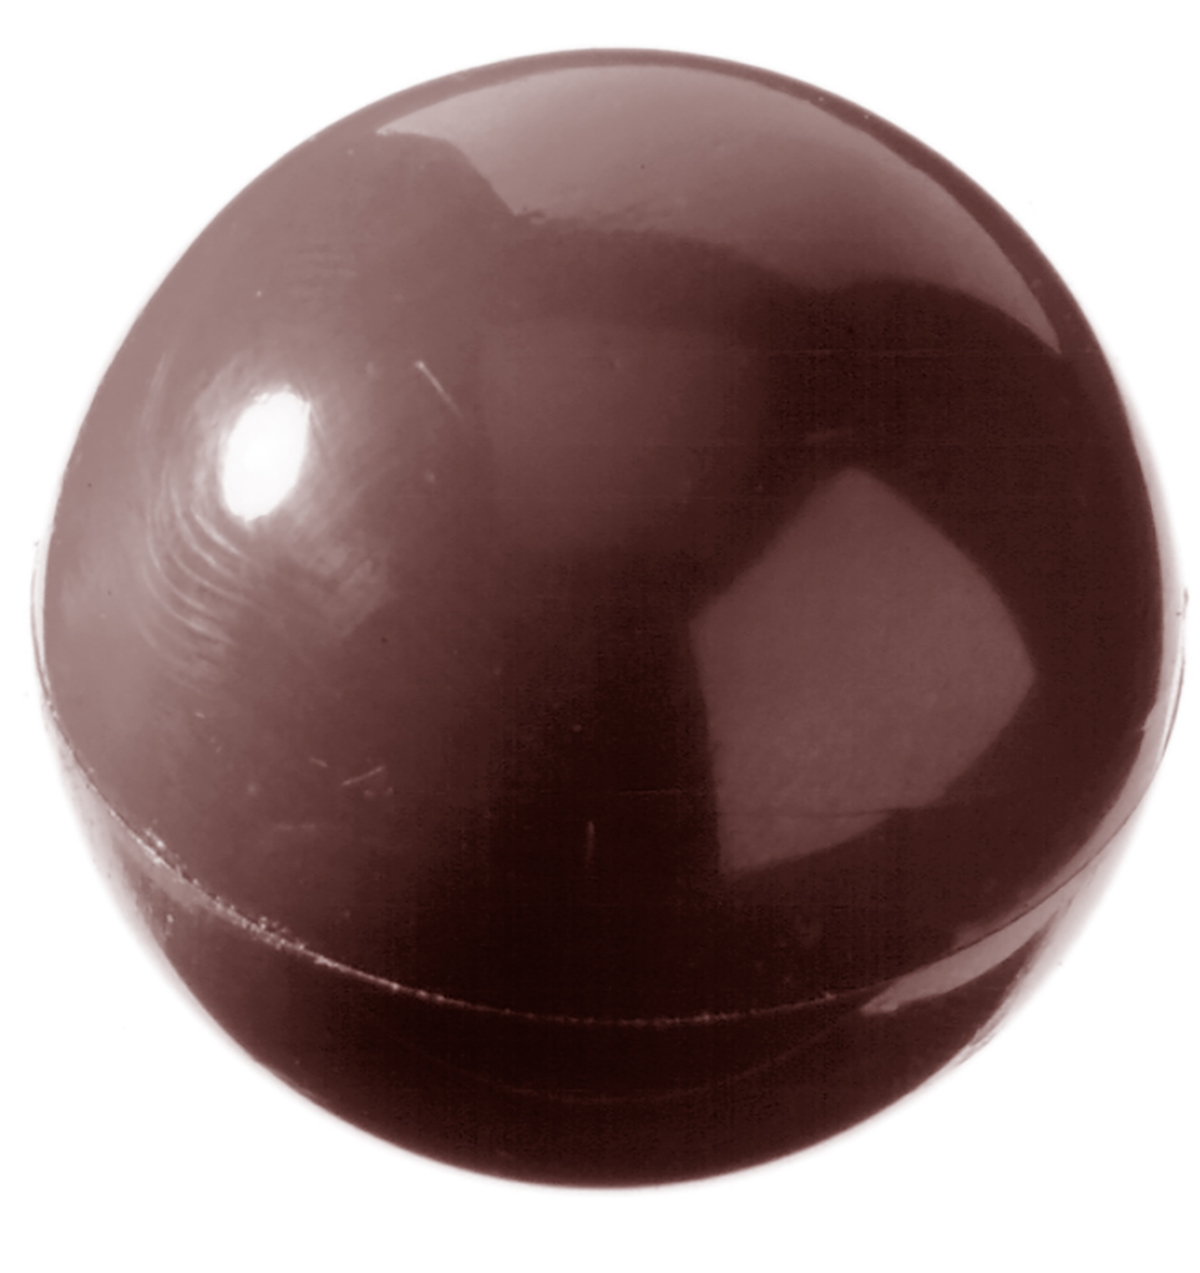 Billede af Professionel chokoladeform i polycarbonat - Half sphere Ø3 cm CW1217